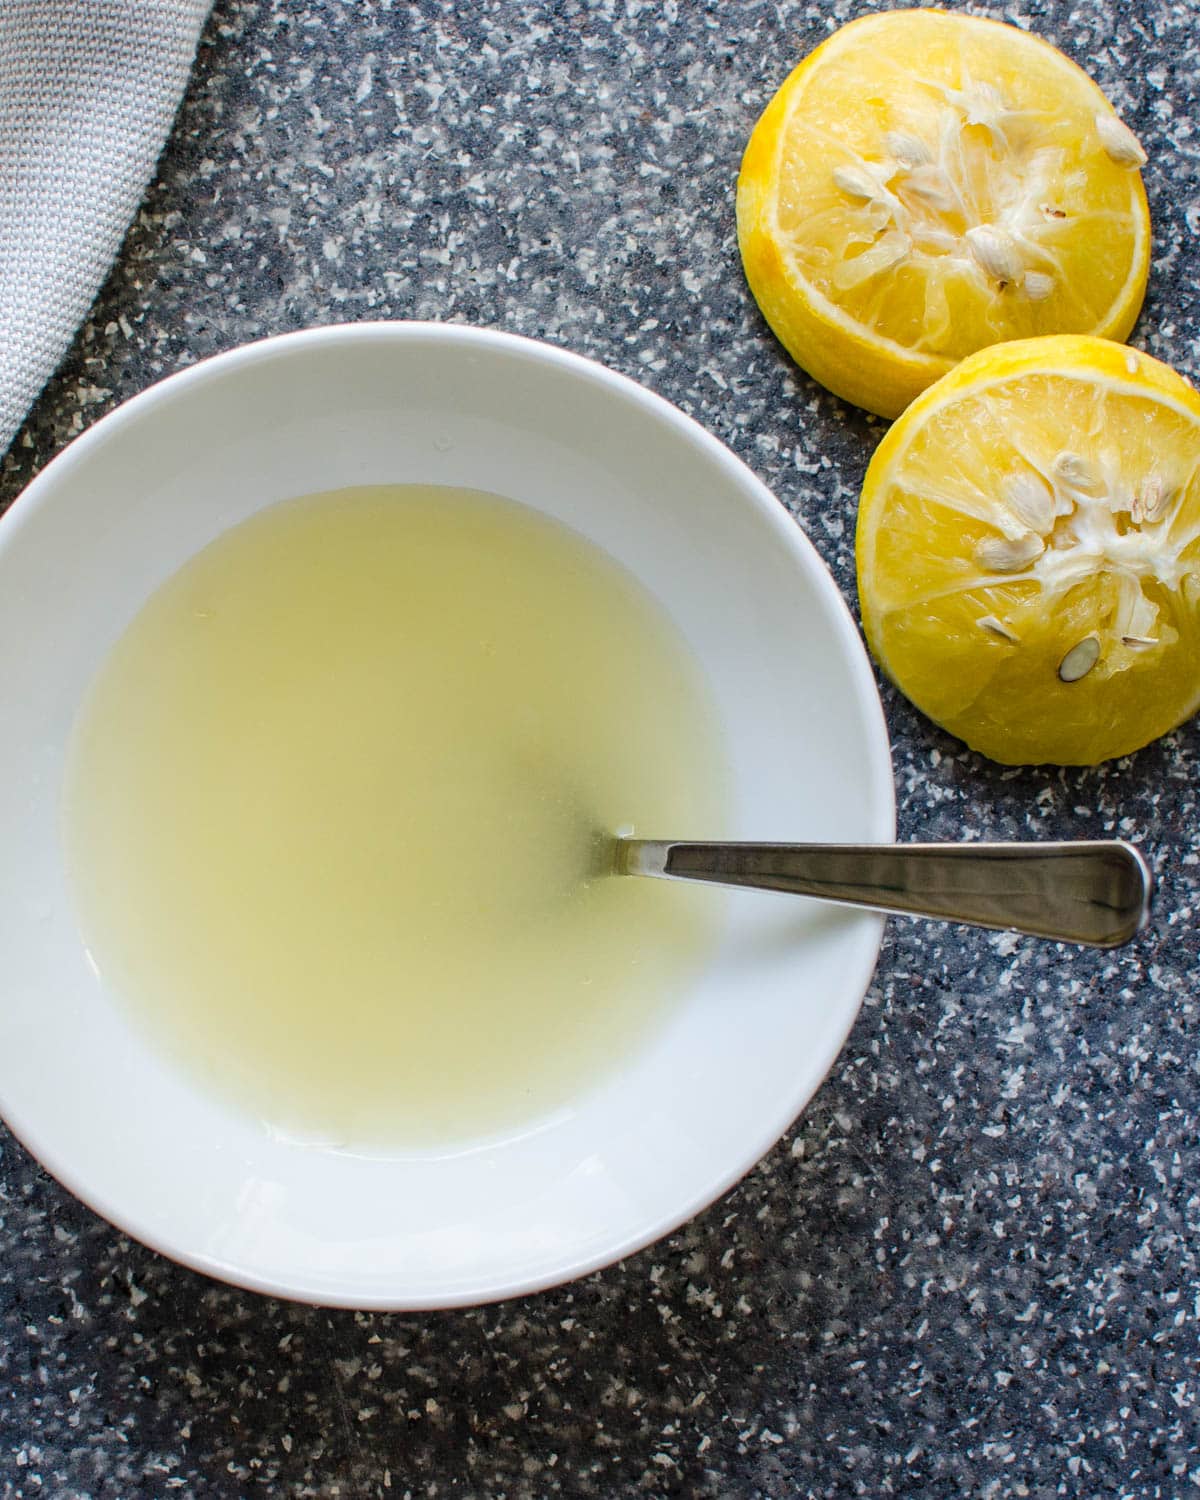 assembling the lemon glaze.